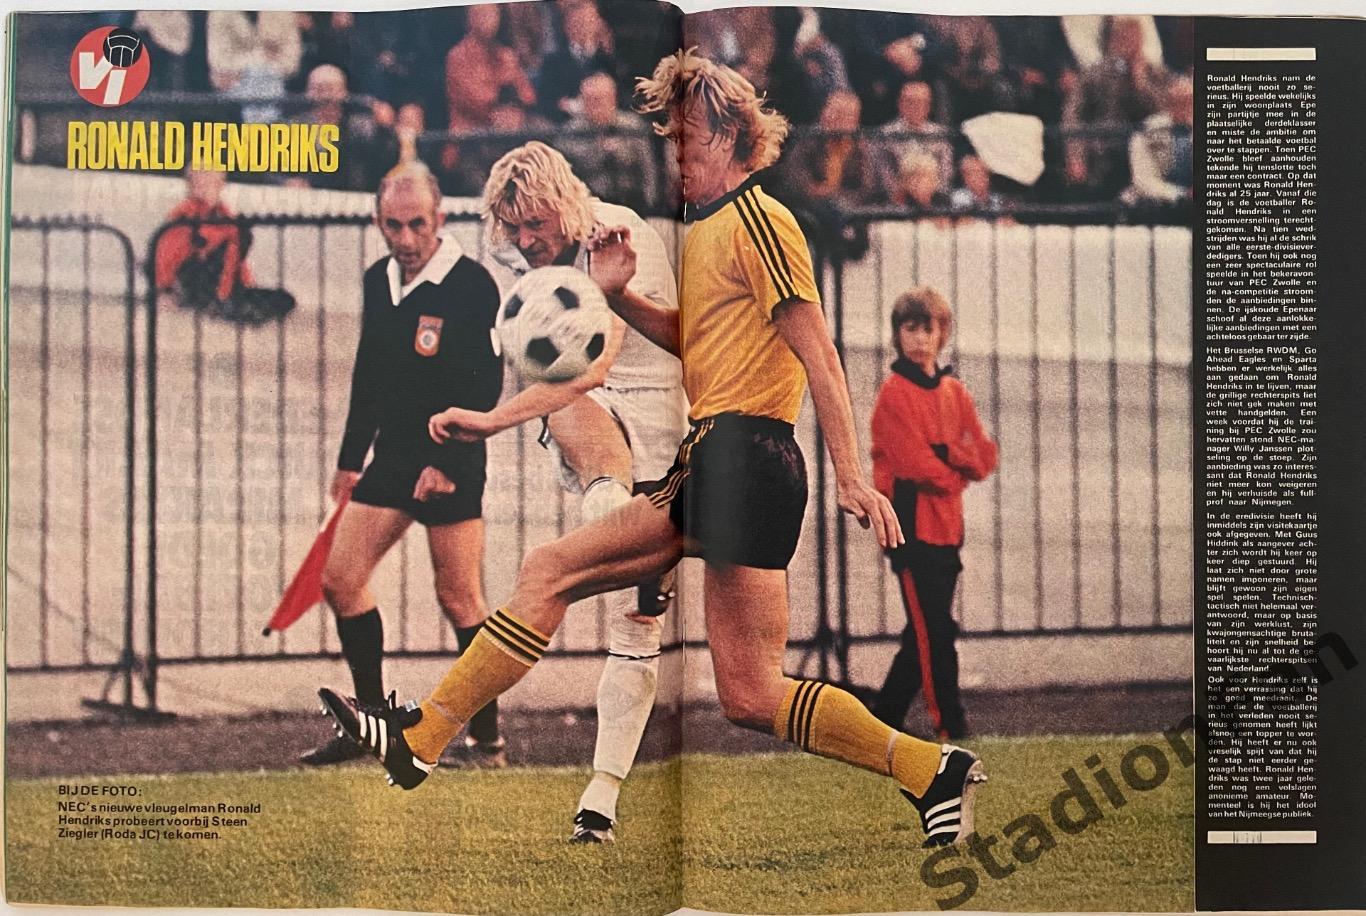 Журнал Voetbal nr.38 - 1977 год. 5